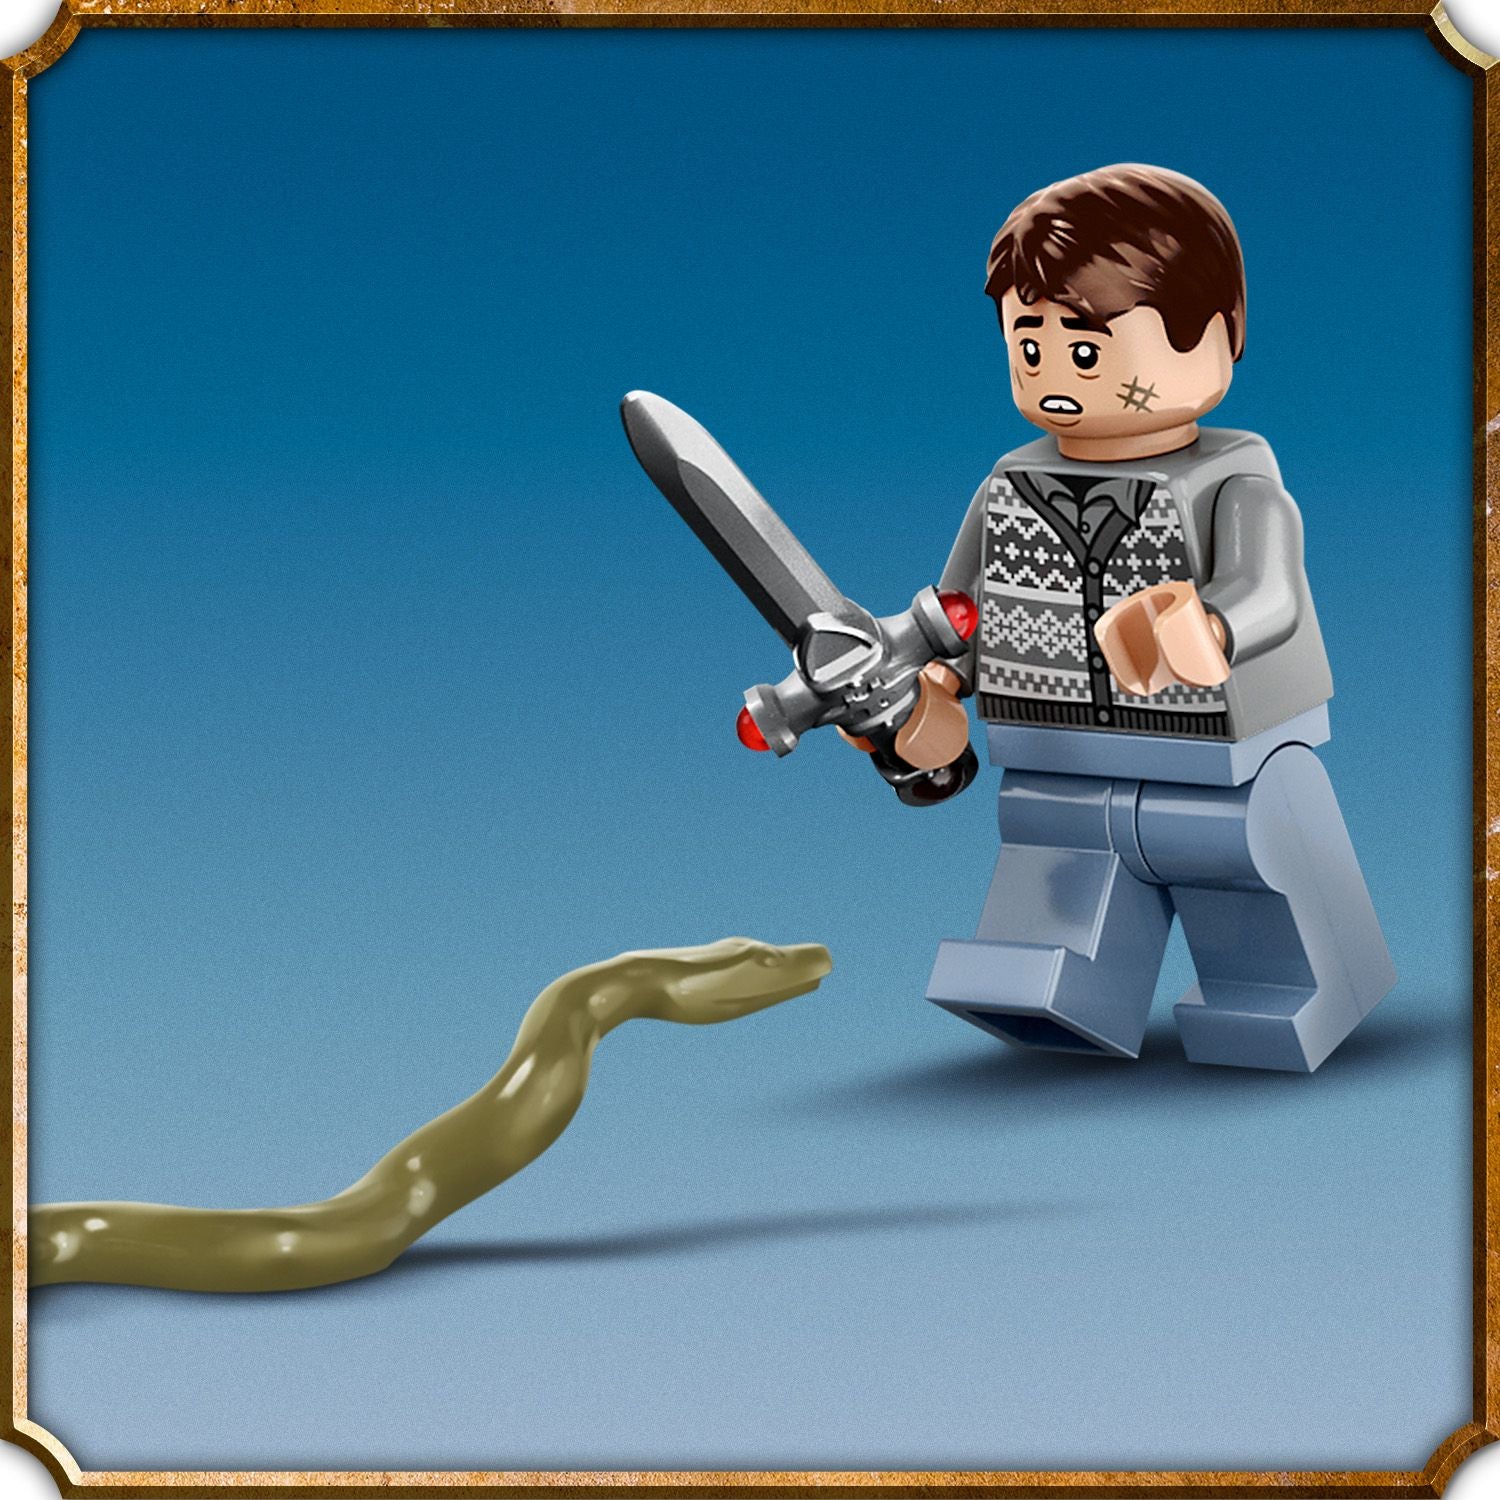 76415 - LEGO Harry Potter - La battaglia di Hogwarts